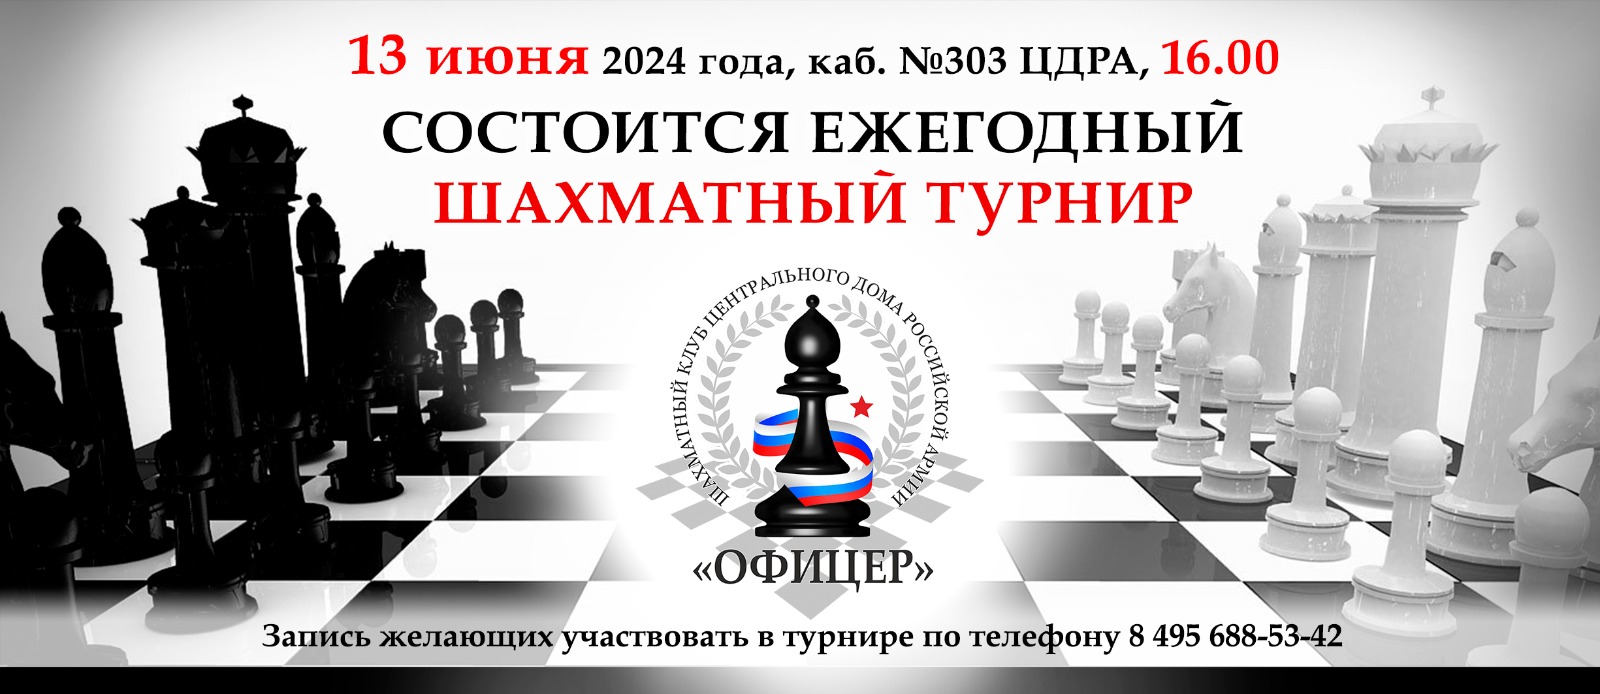 13 июня шахматный турнир